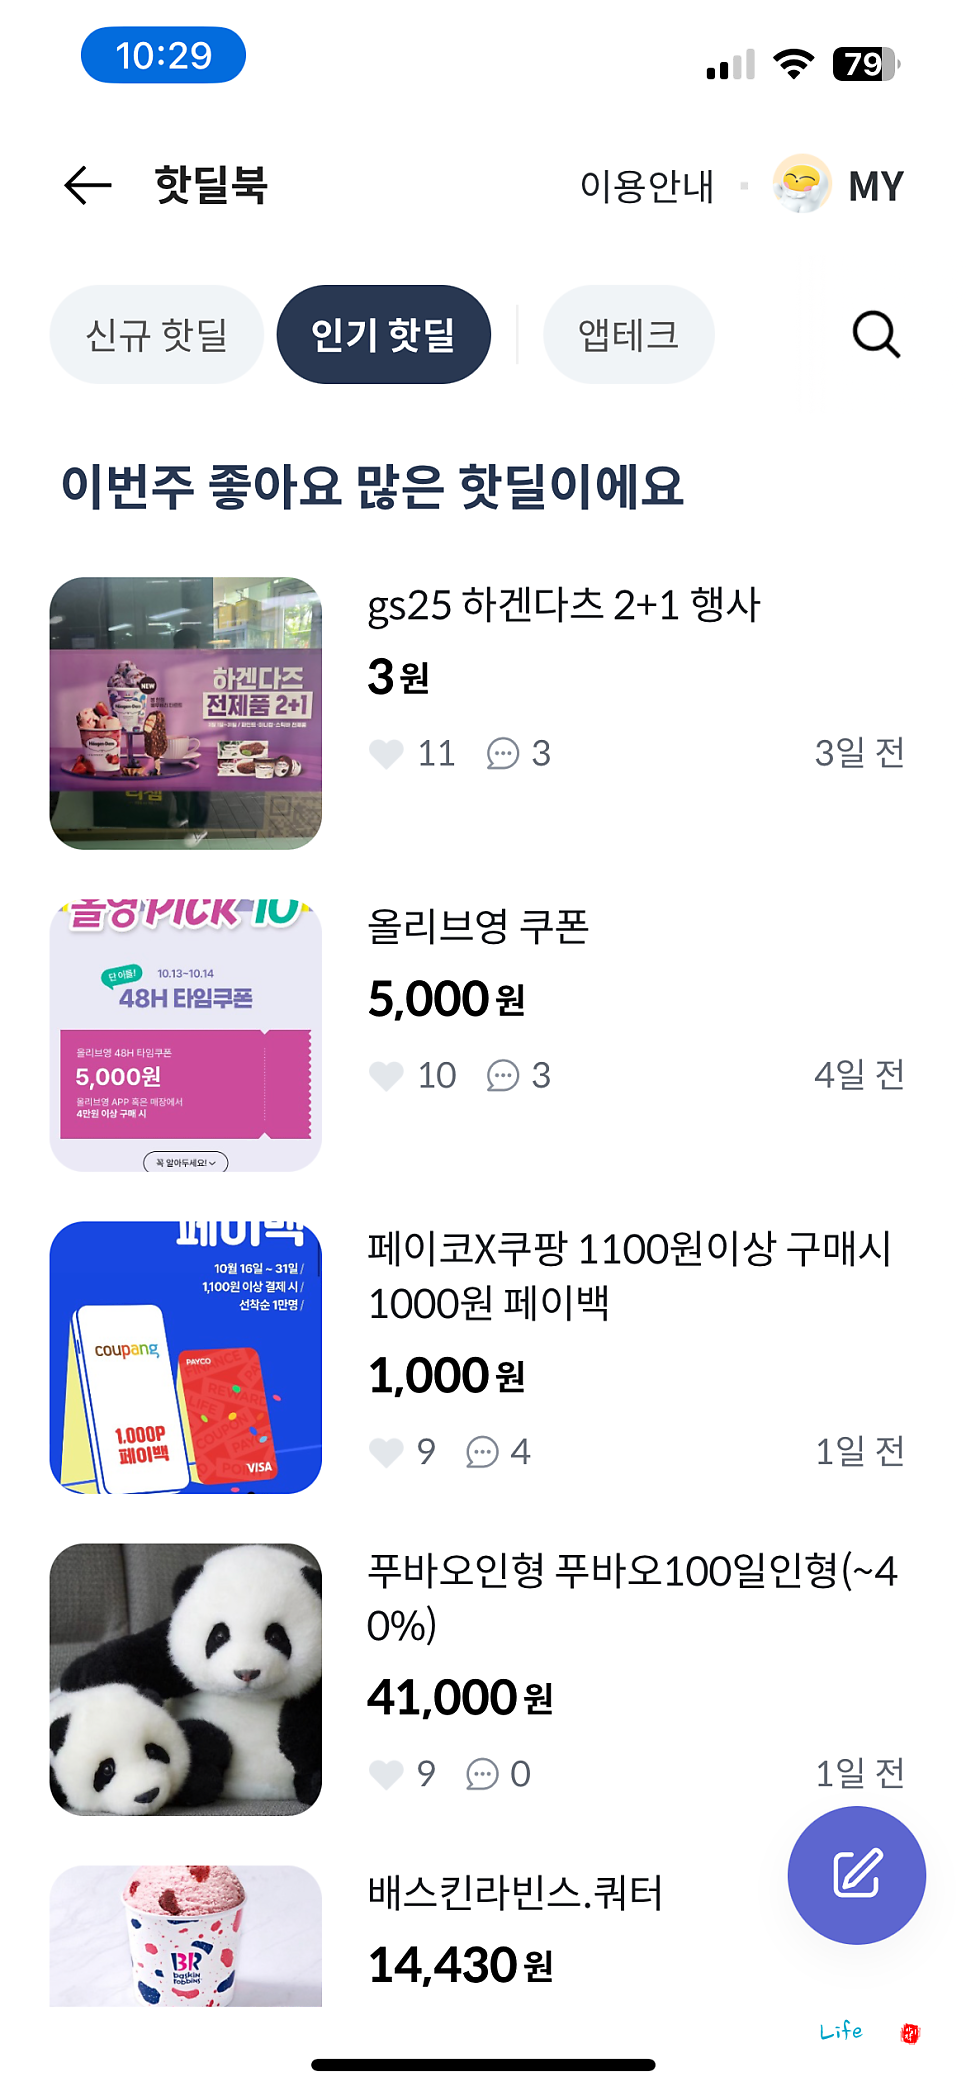 쇼핑 커뮤니티 페이북 핫딜북 소개 및 활용 방법